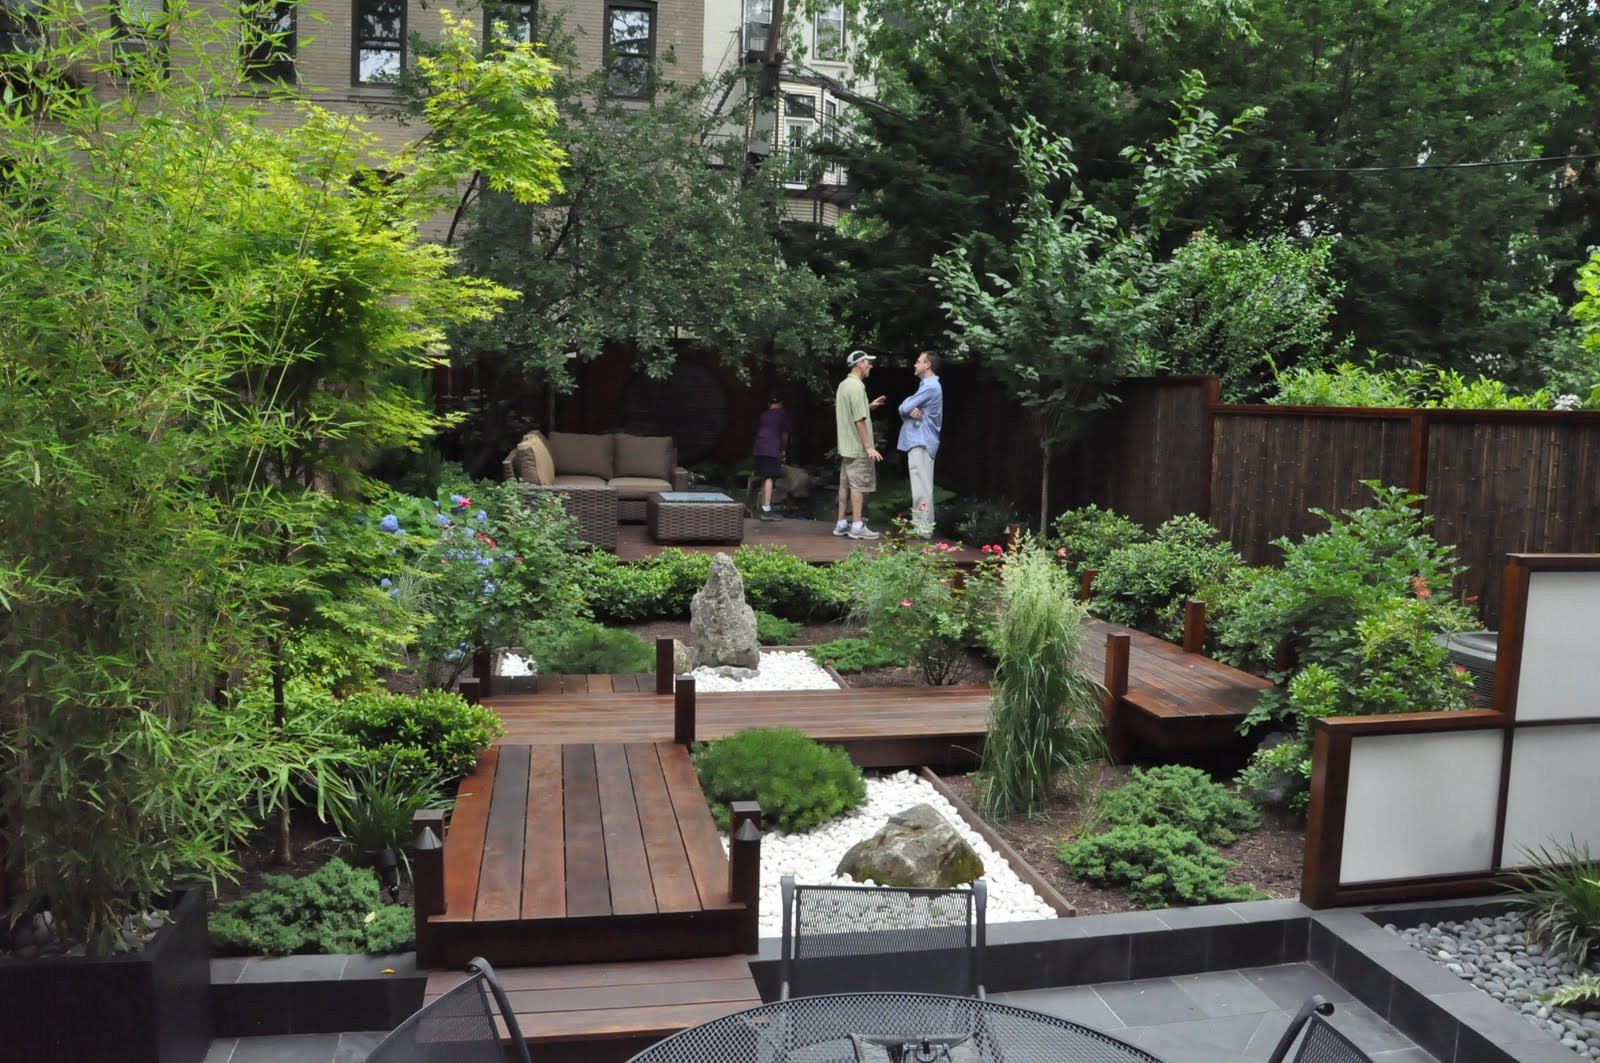 Best ideas about Japanese Garden Backyard
. Save or Pin Hoboken Secret Garden Tour Part 1 – Hoboken Journal Now.